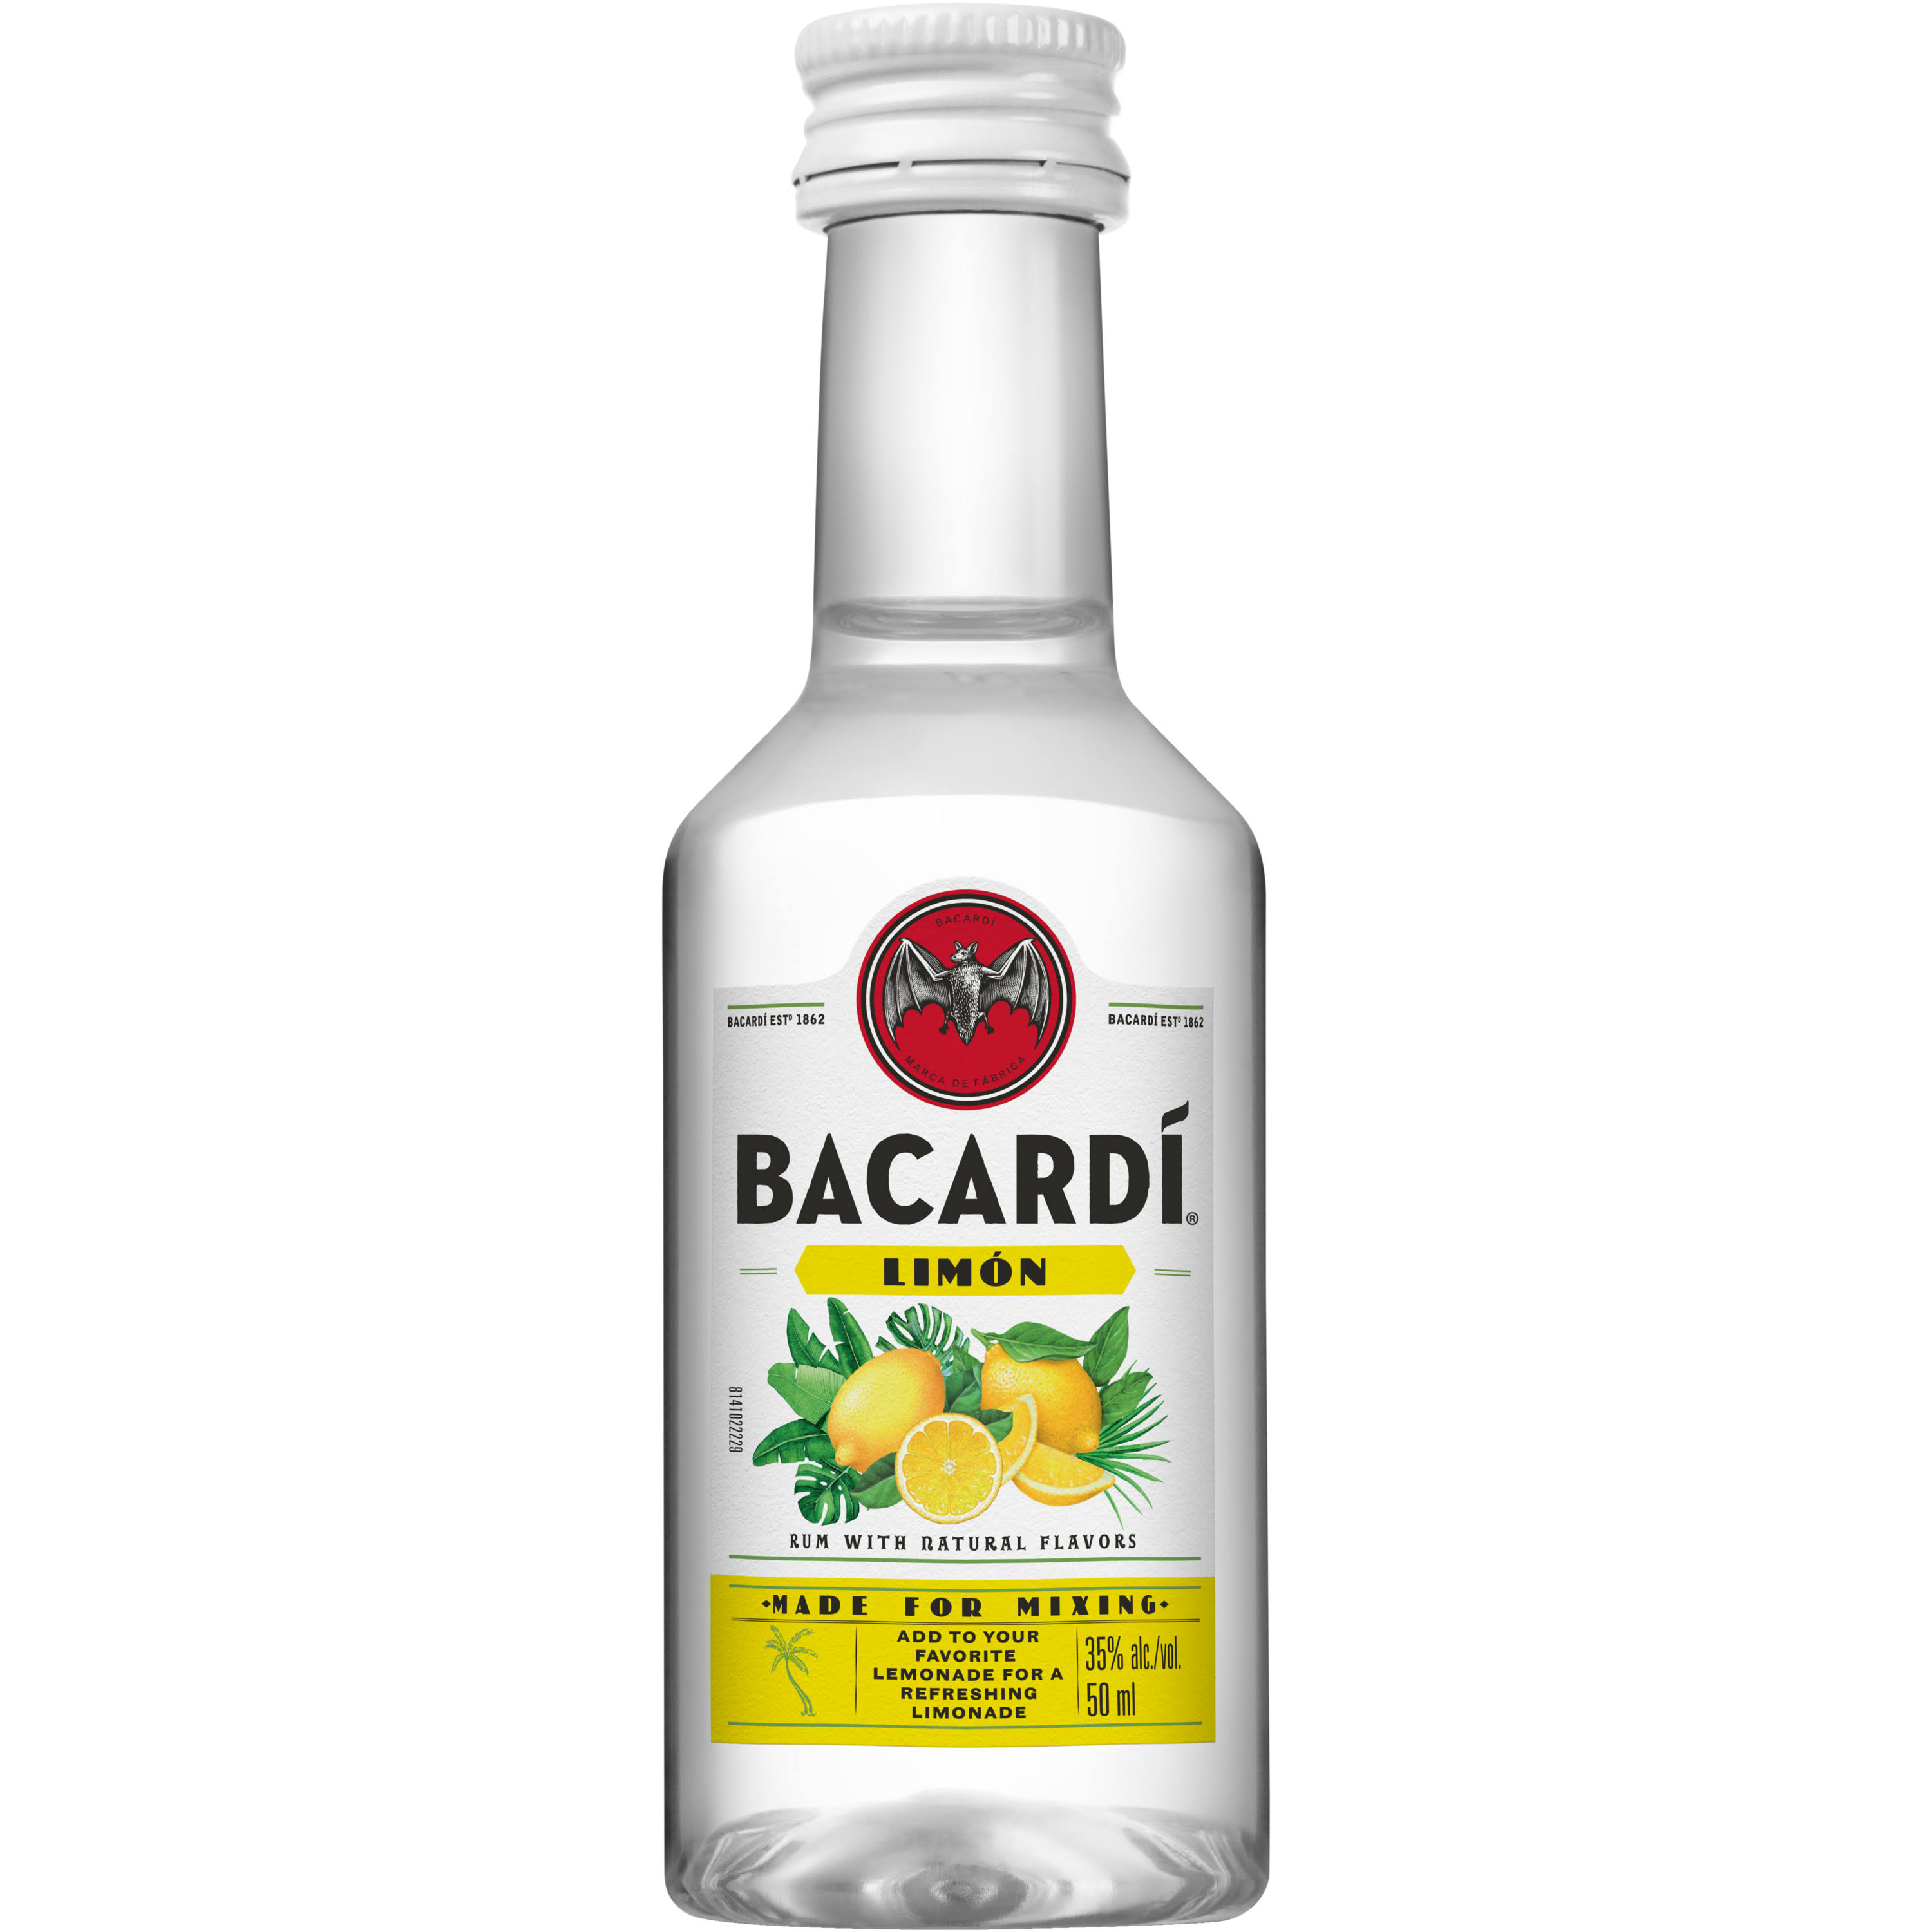 Bacardi Limon Rum - 50 ml bottle